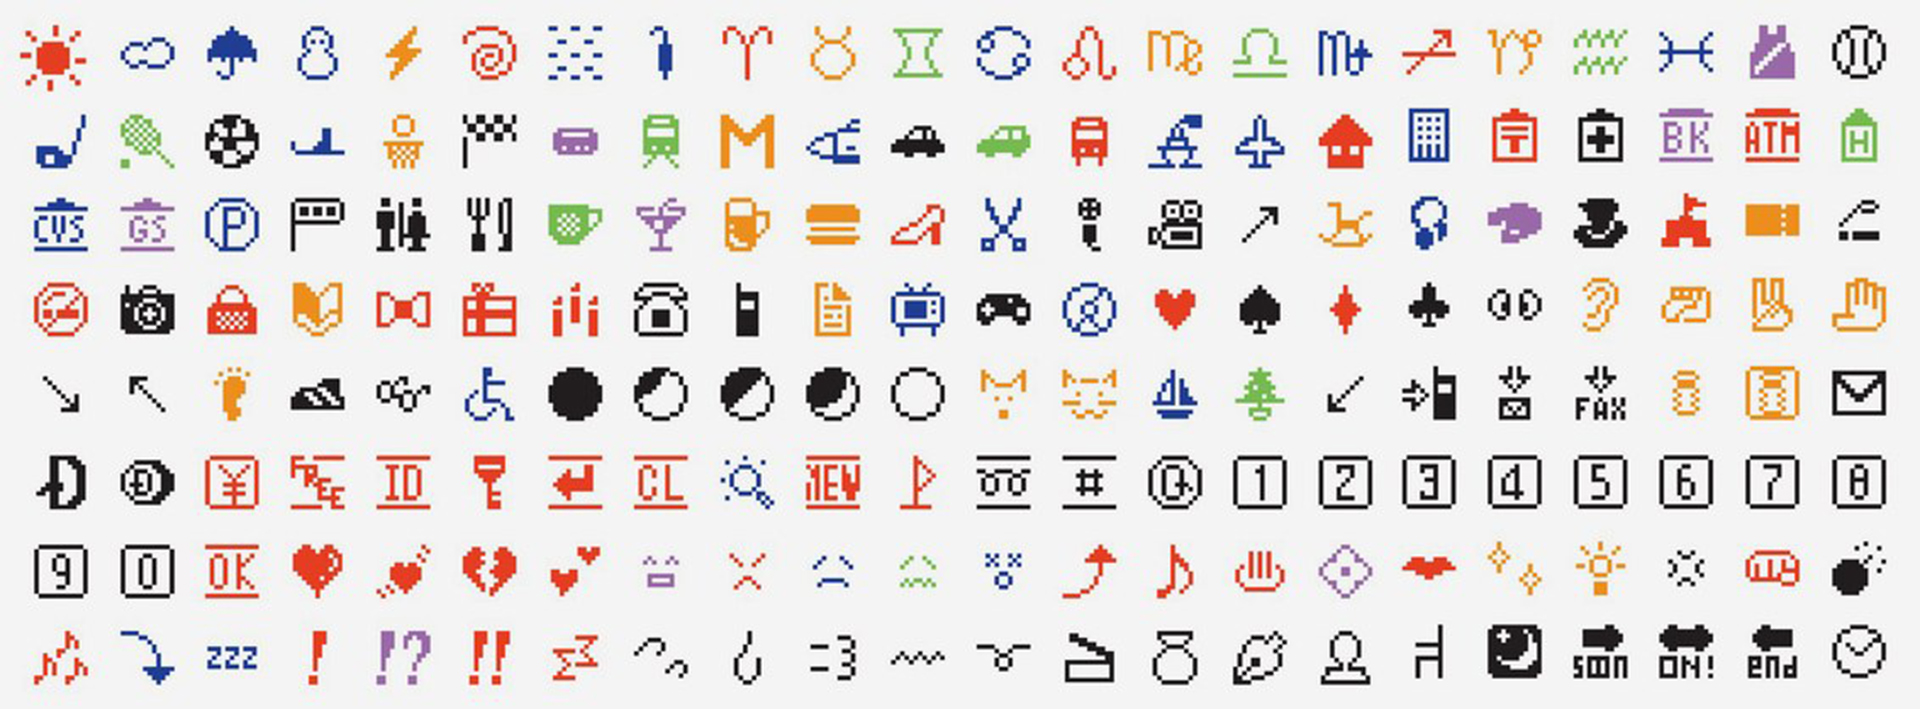 Éstos son los primeros emojis creados por Kurita